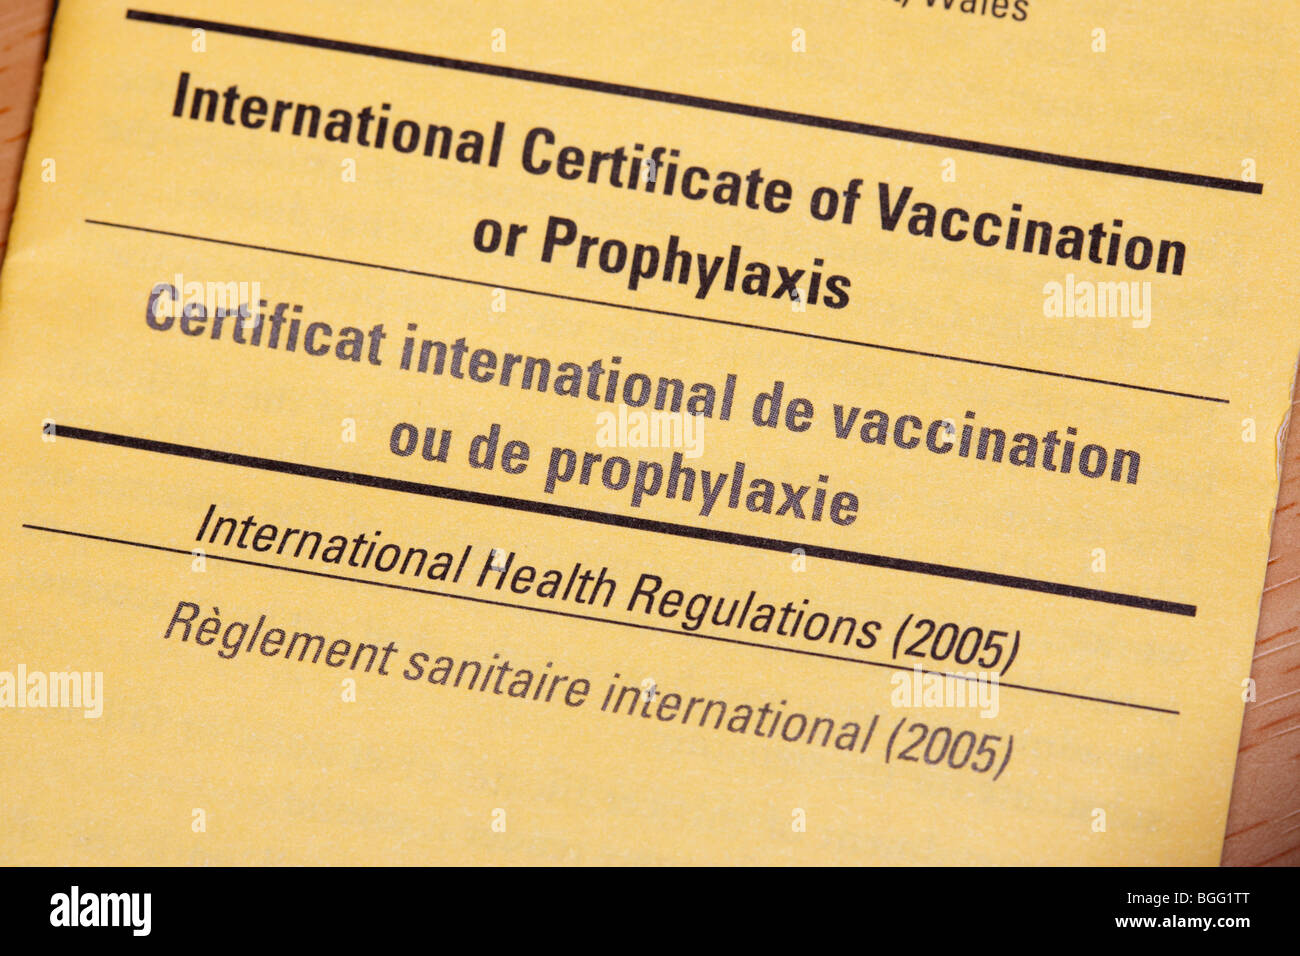 Certificato internazionale di vaccinazione o profilassi certificat de ou de prophylaxie regolamento sanitario internazionale Foto Stock